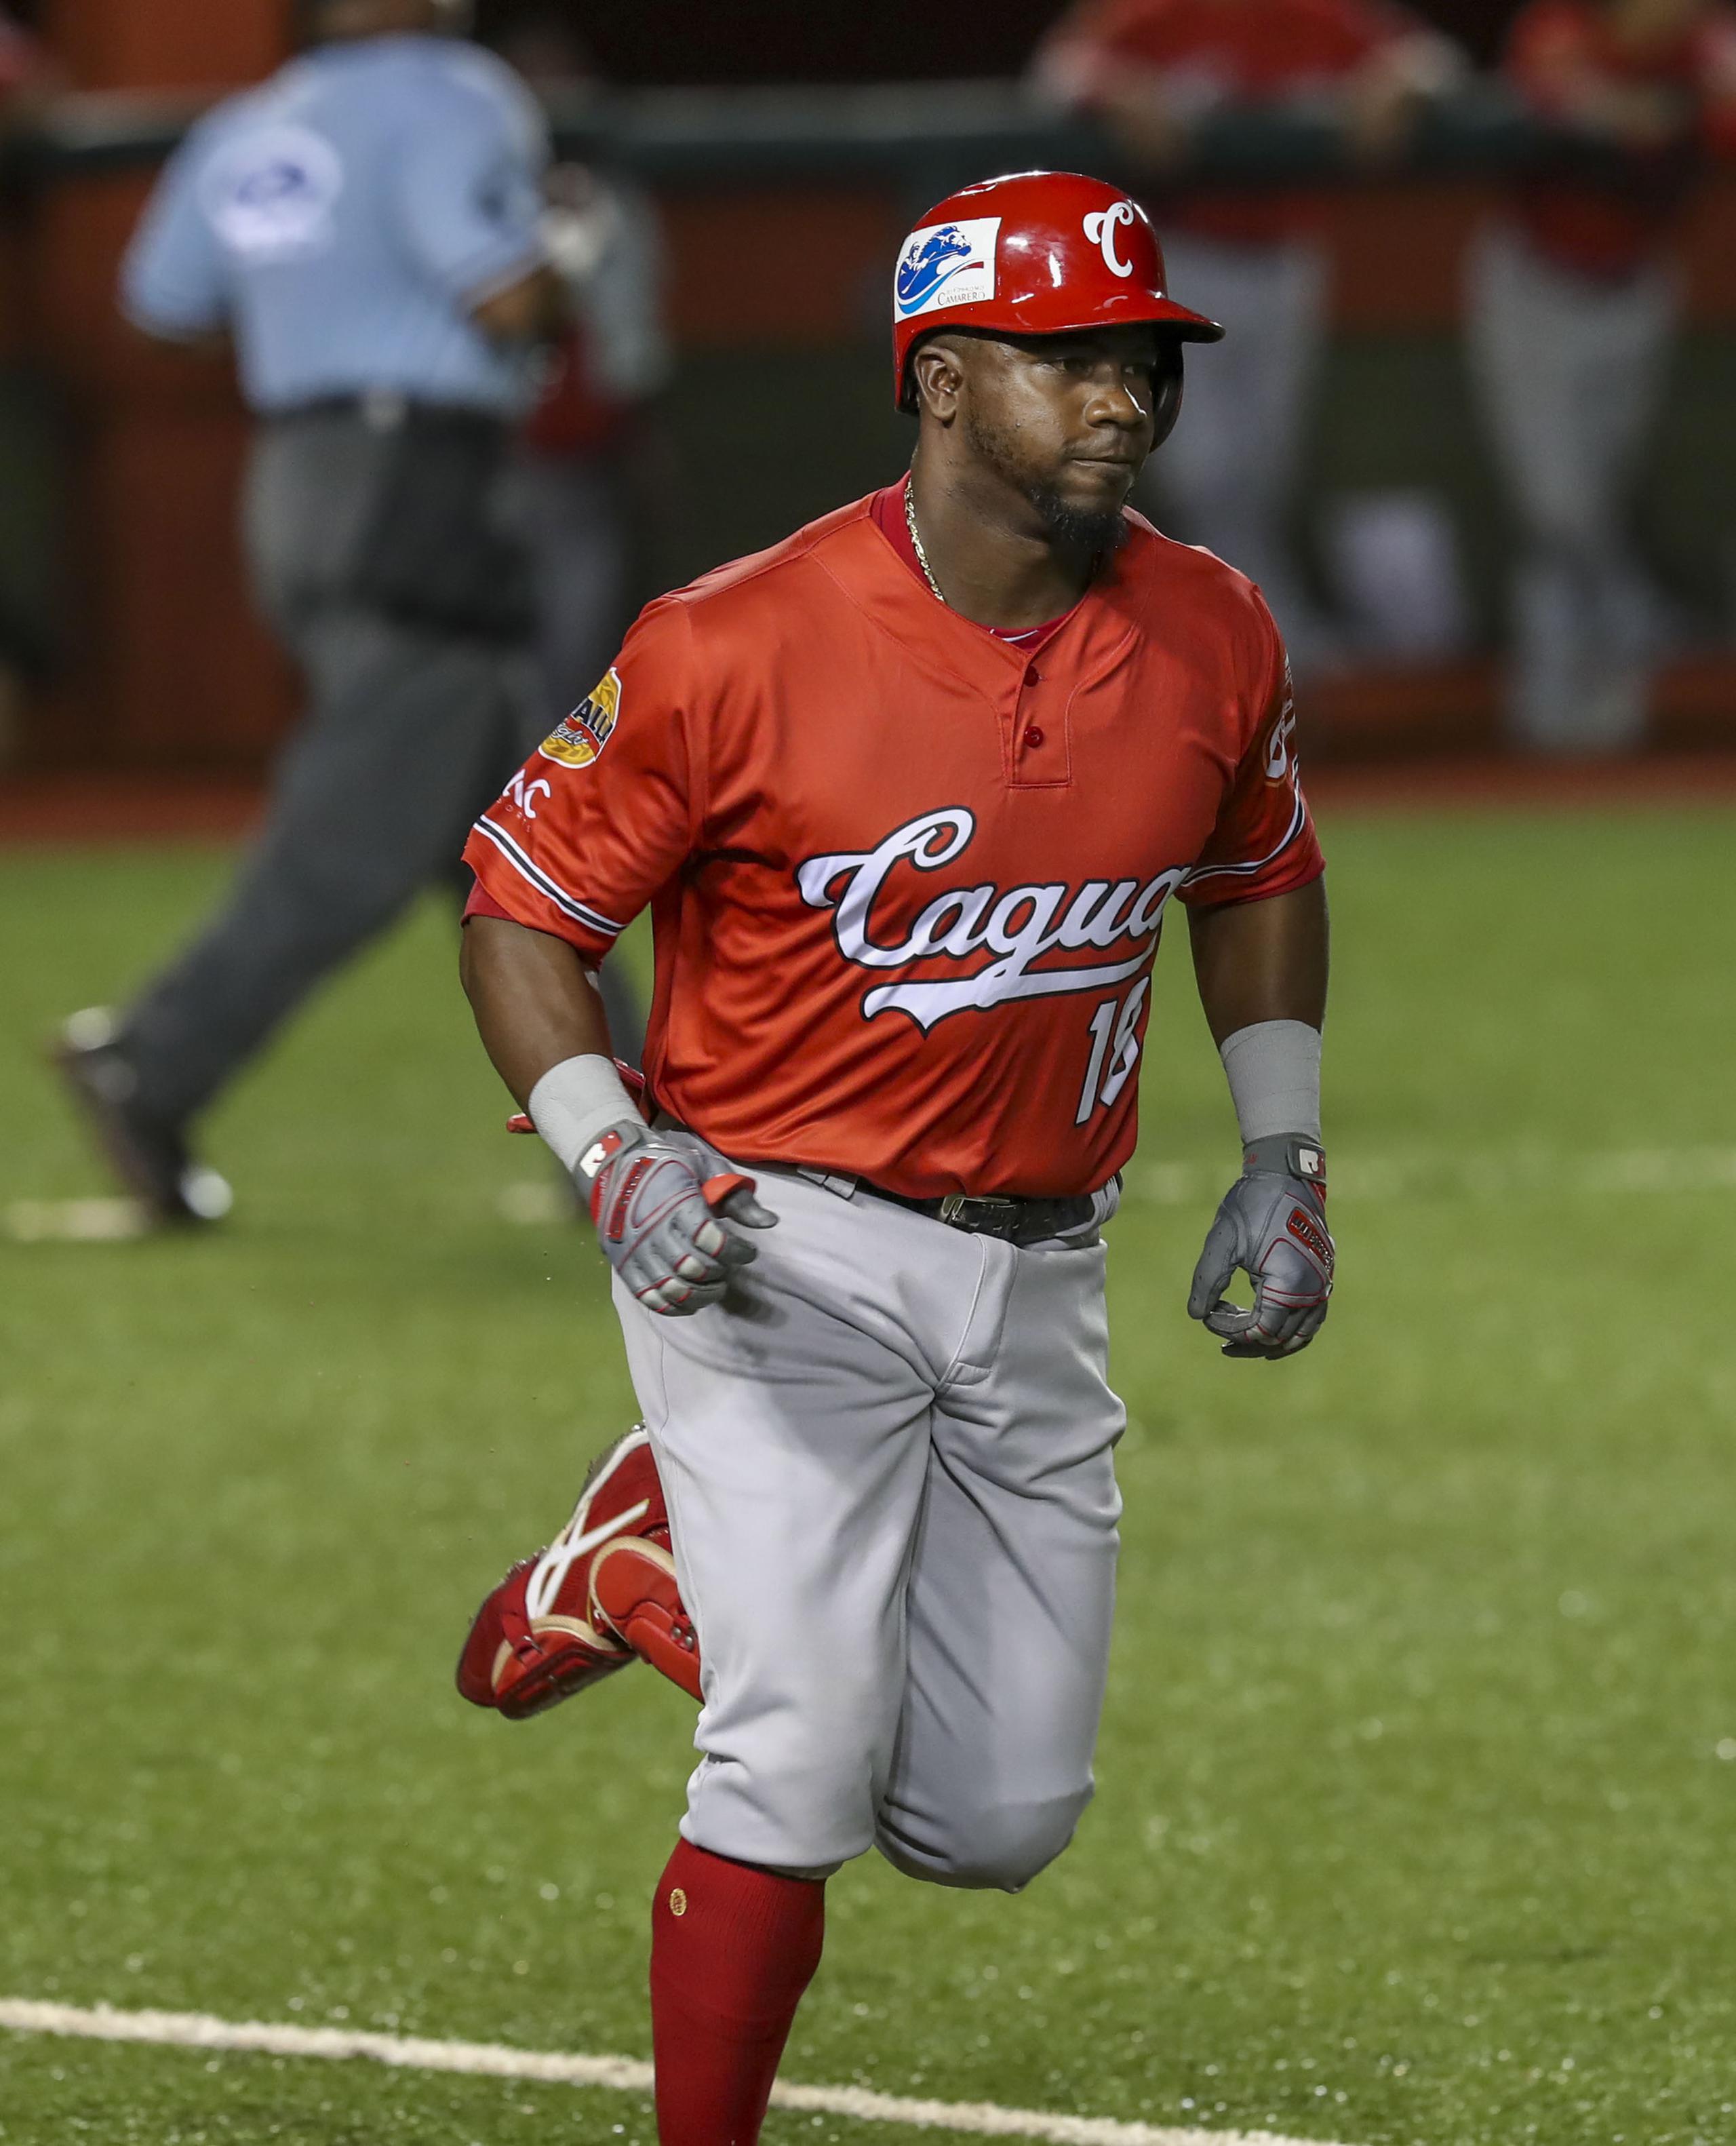 El jardinero cubano Rusney Castillo, anunciado el viernes por los Cangrejeros de Santurce, jugó varias temporadas con los Criollos de Caguas en la Liga de Béisbol Profesional Roberto Clemente (LBPRC).